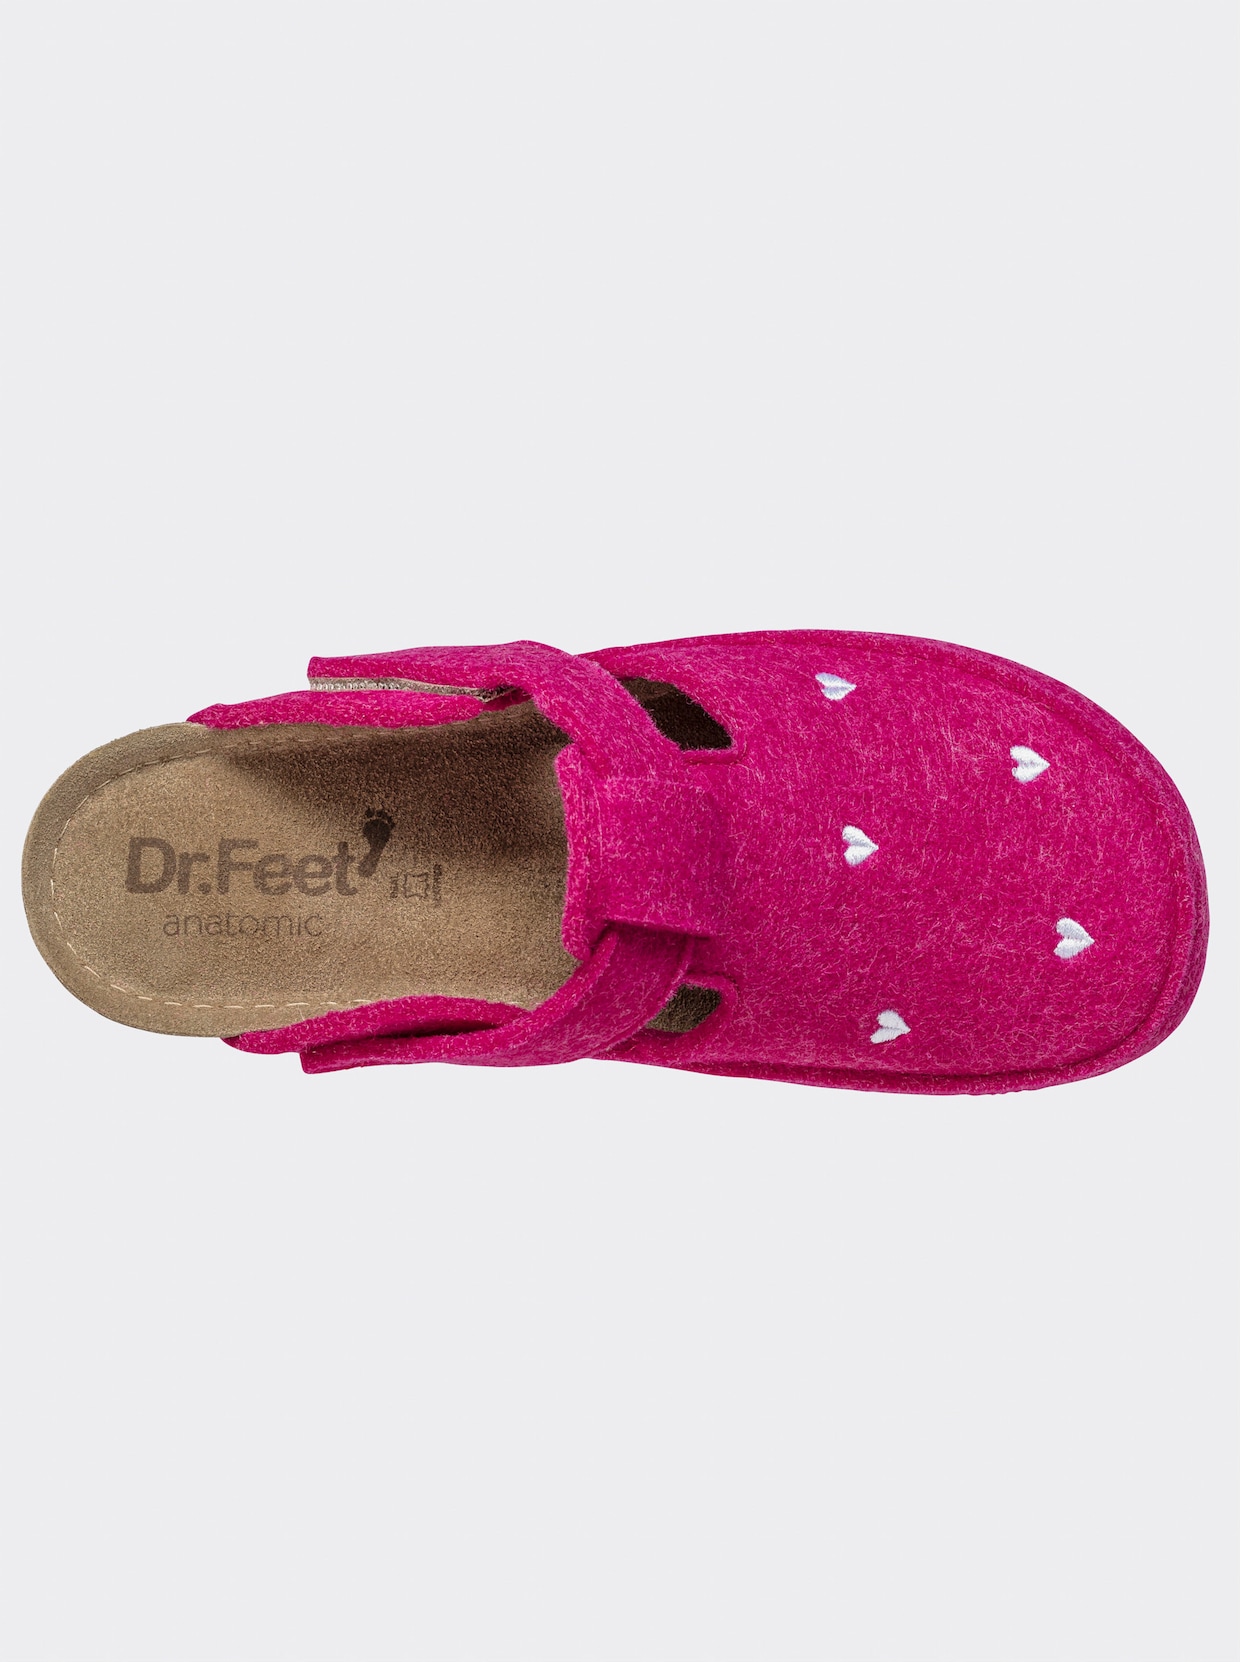 Dr. Feet Huisschoen - pink